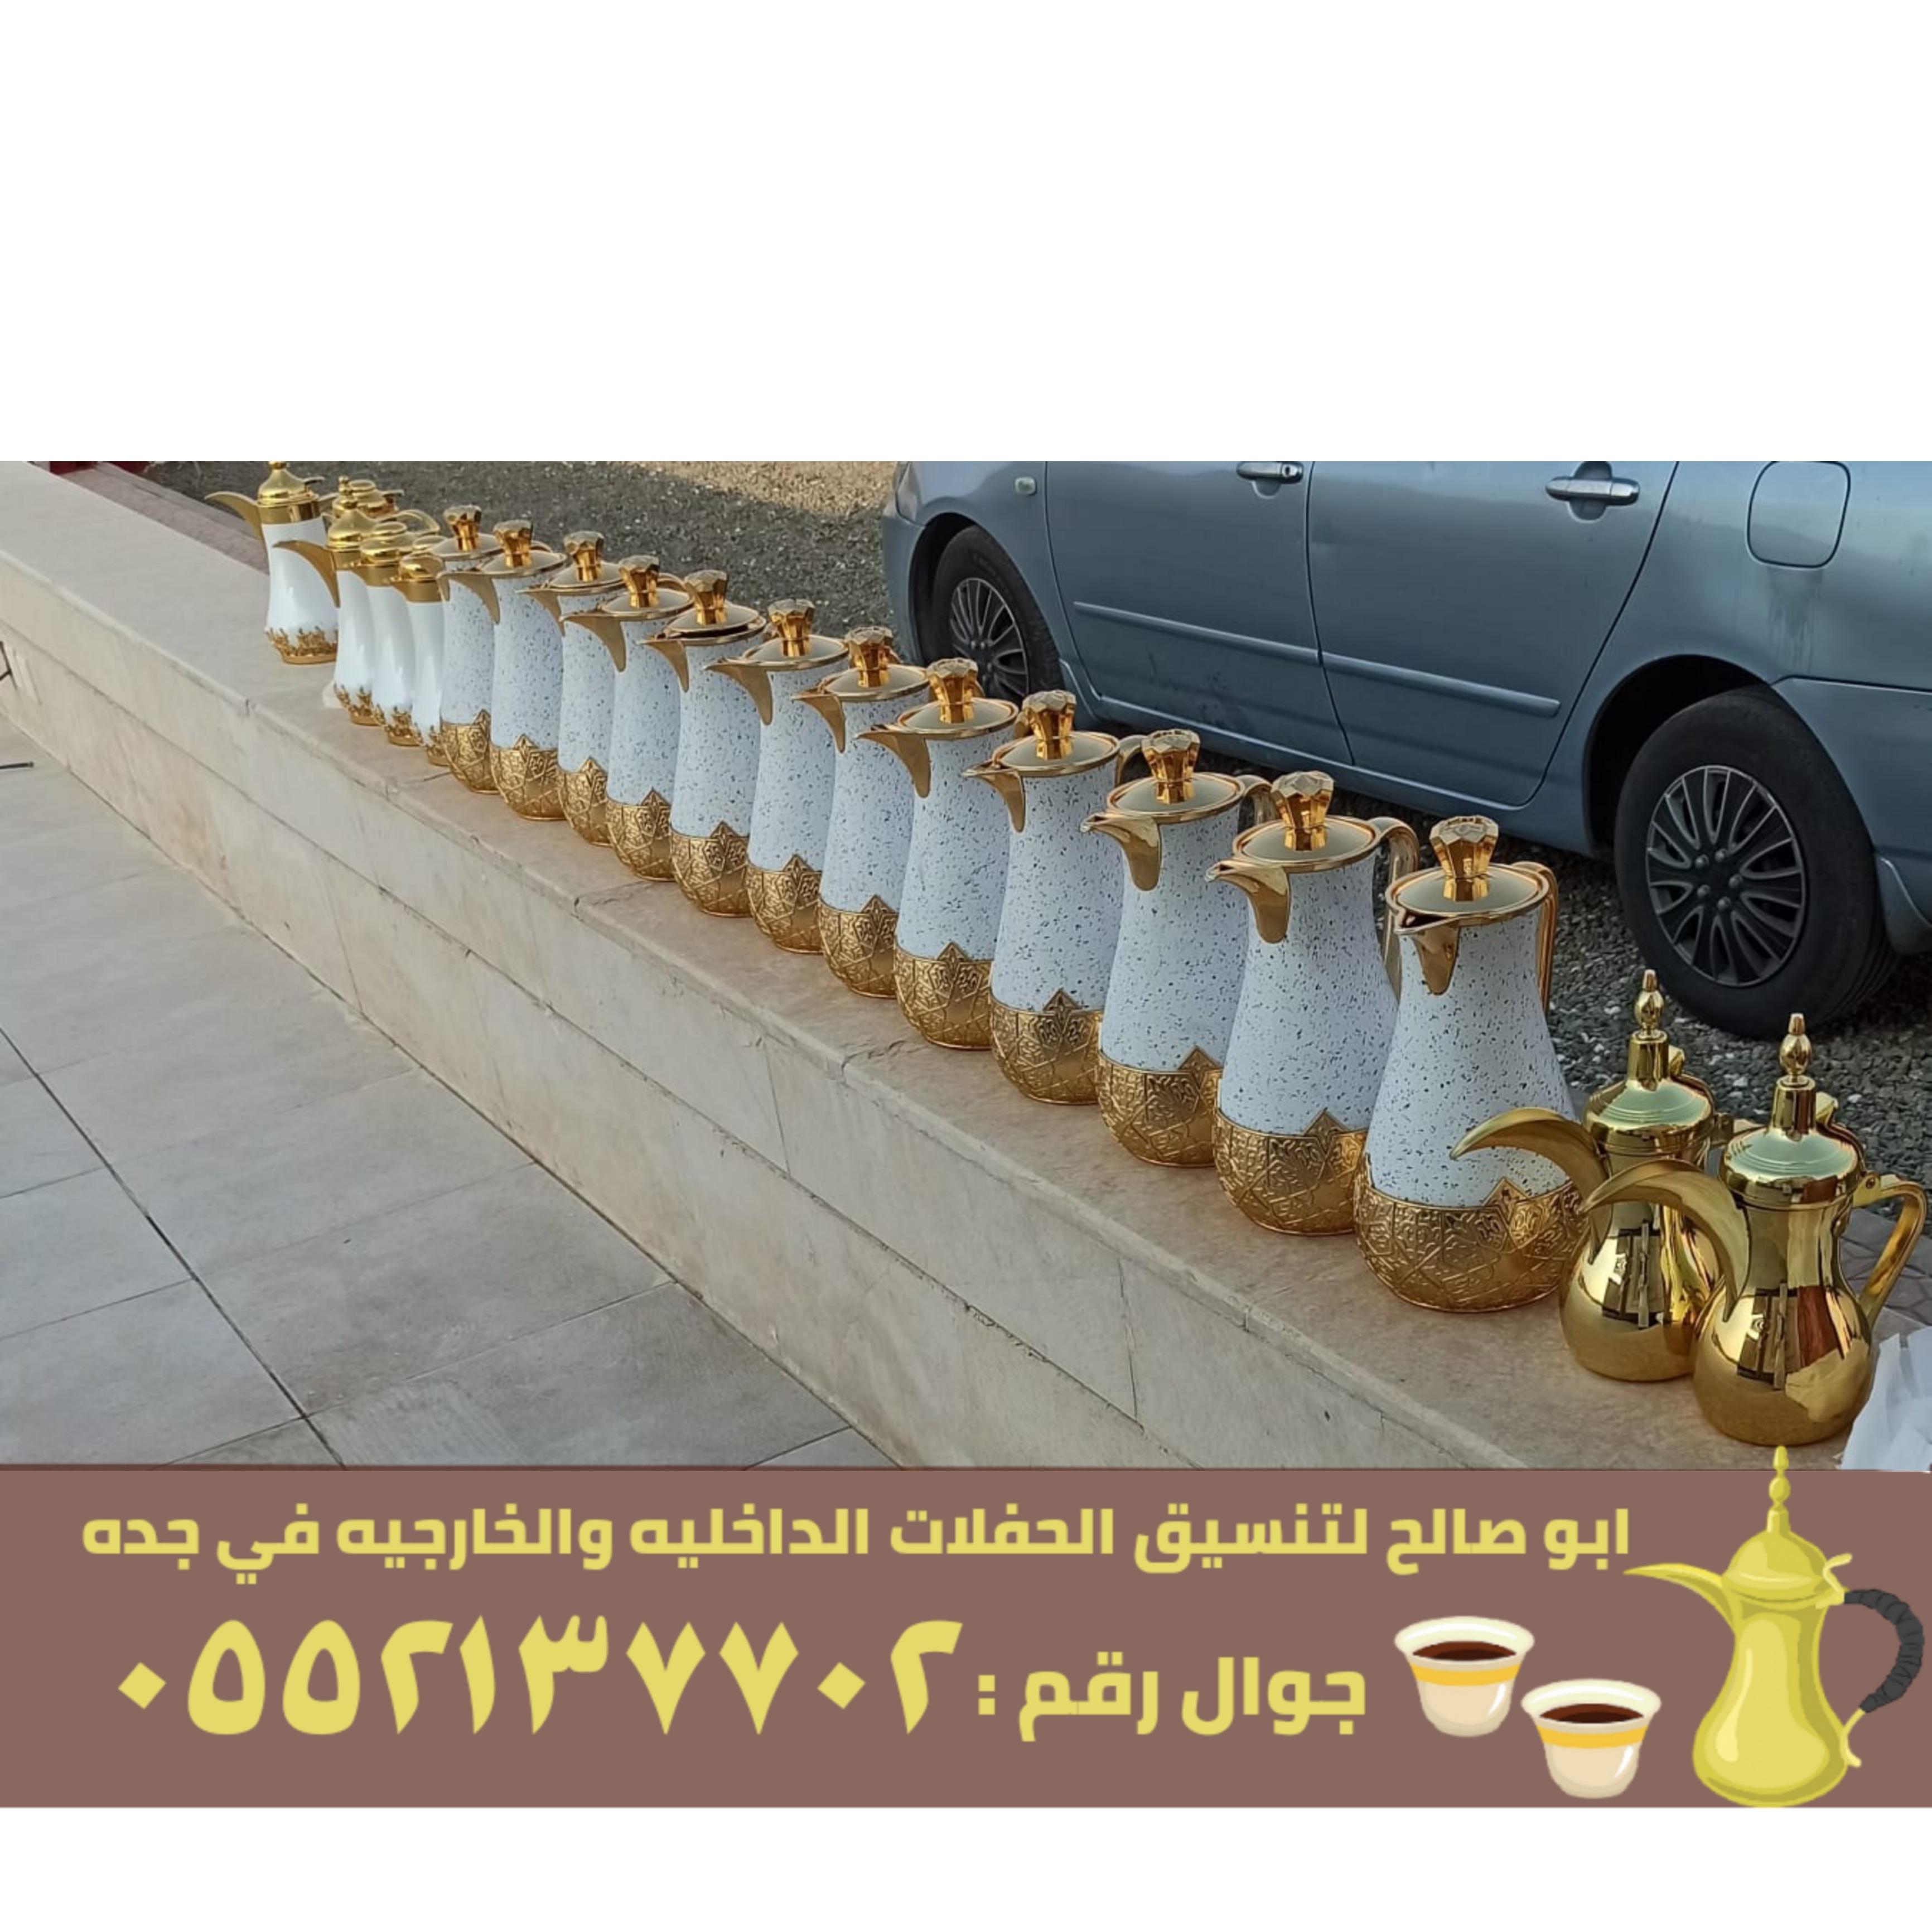 صبابين قهوه قهوجيات في جدة,0552137702 956219766